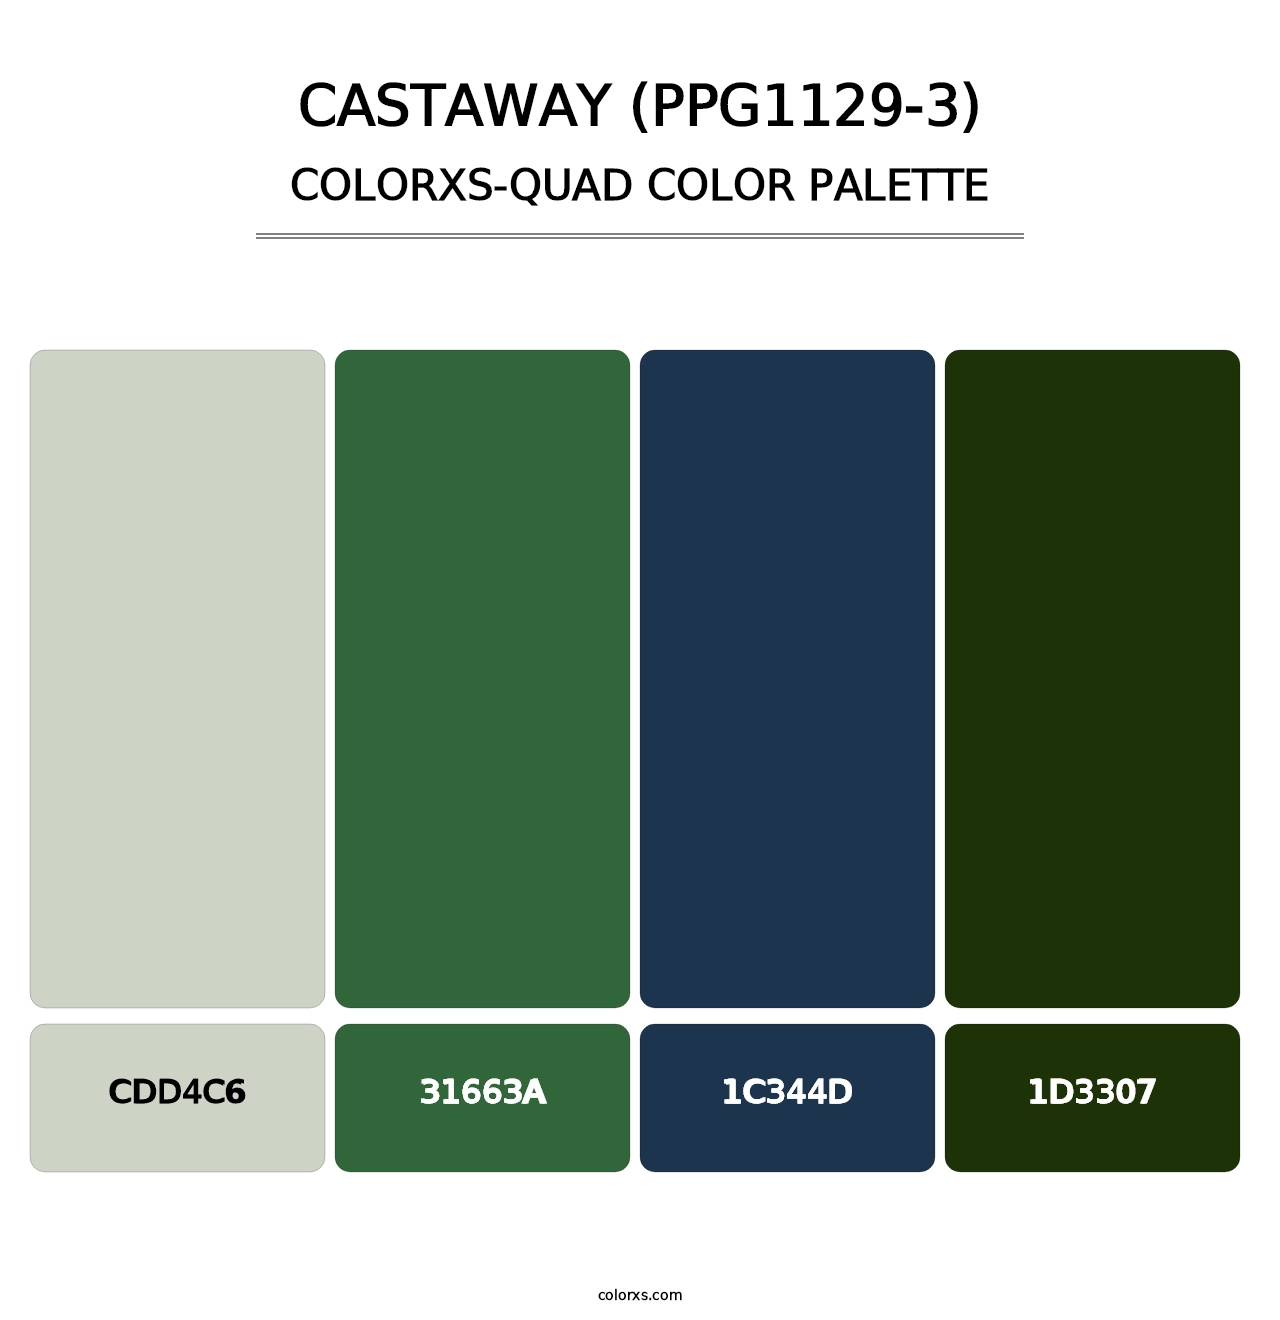 Castaway (PPG1129-3) - Colorxs Quad Palette